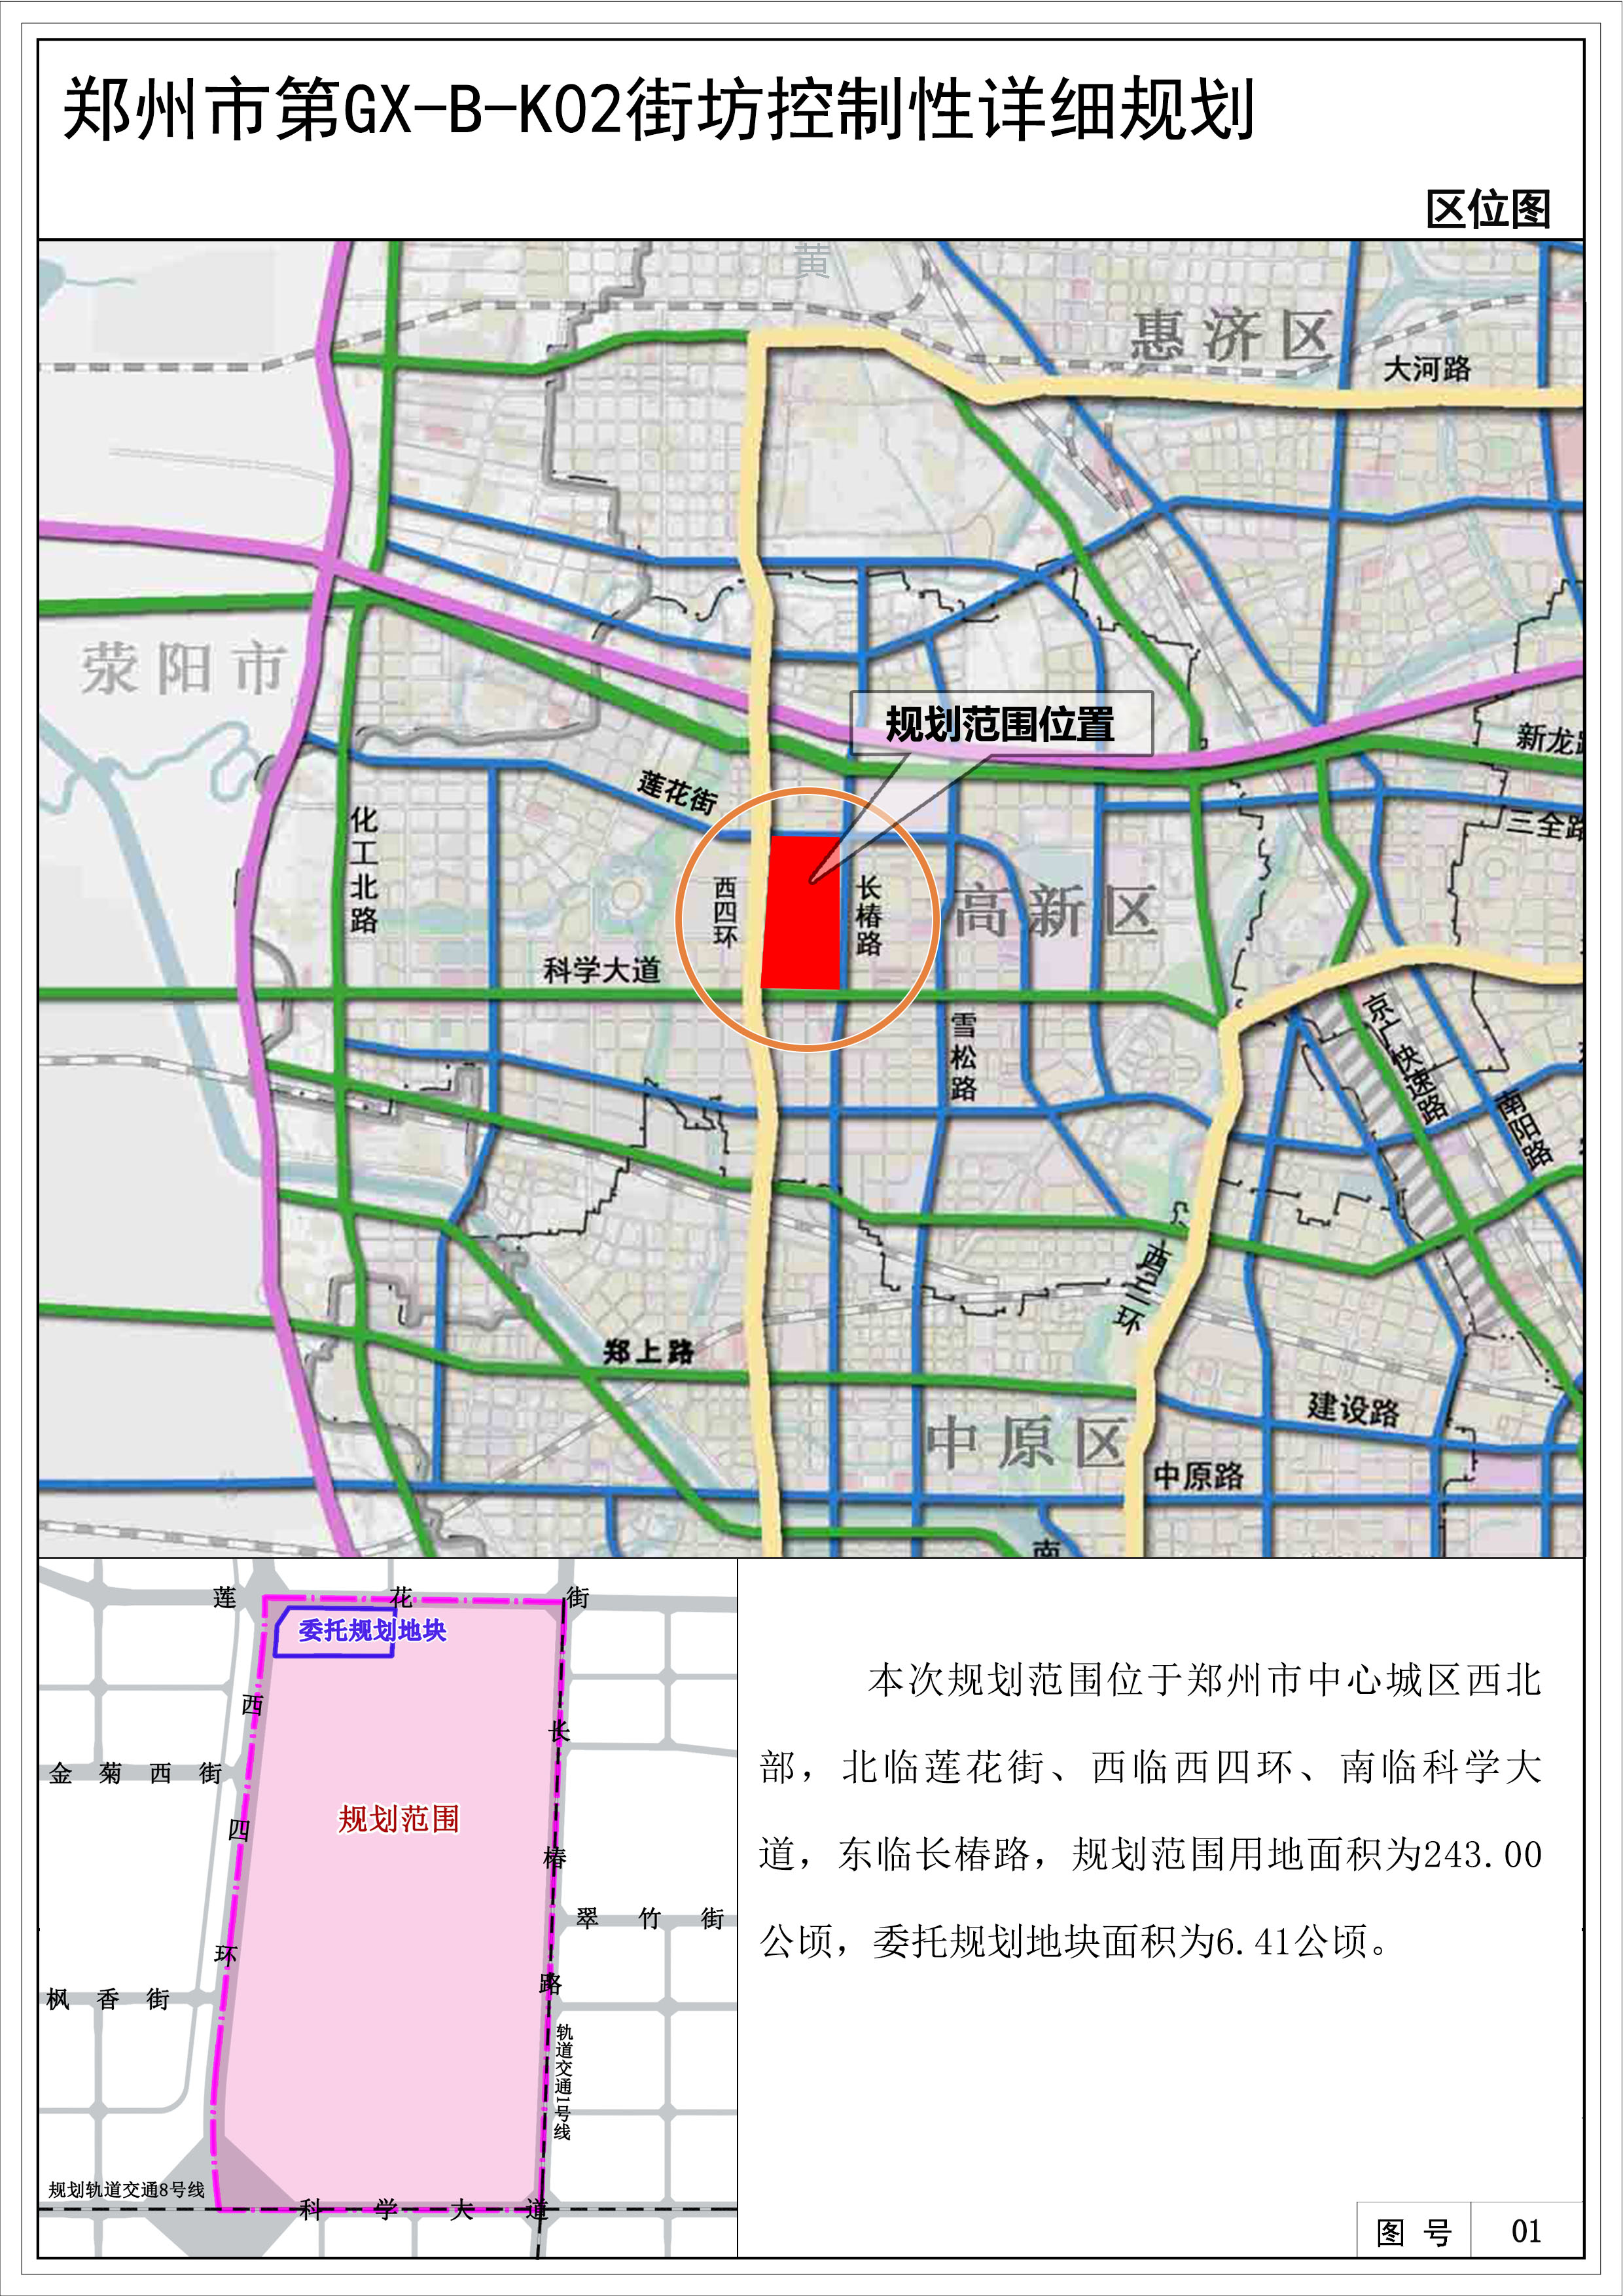 郑州市第GX-B-K02街坊控制性详细规划